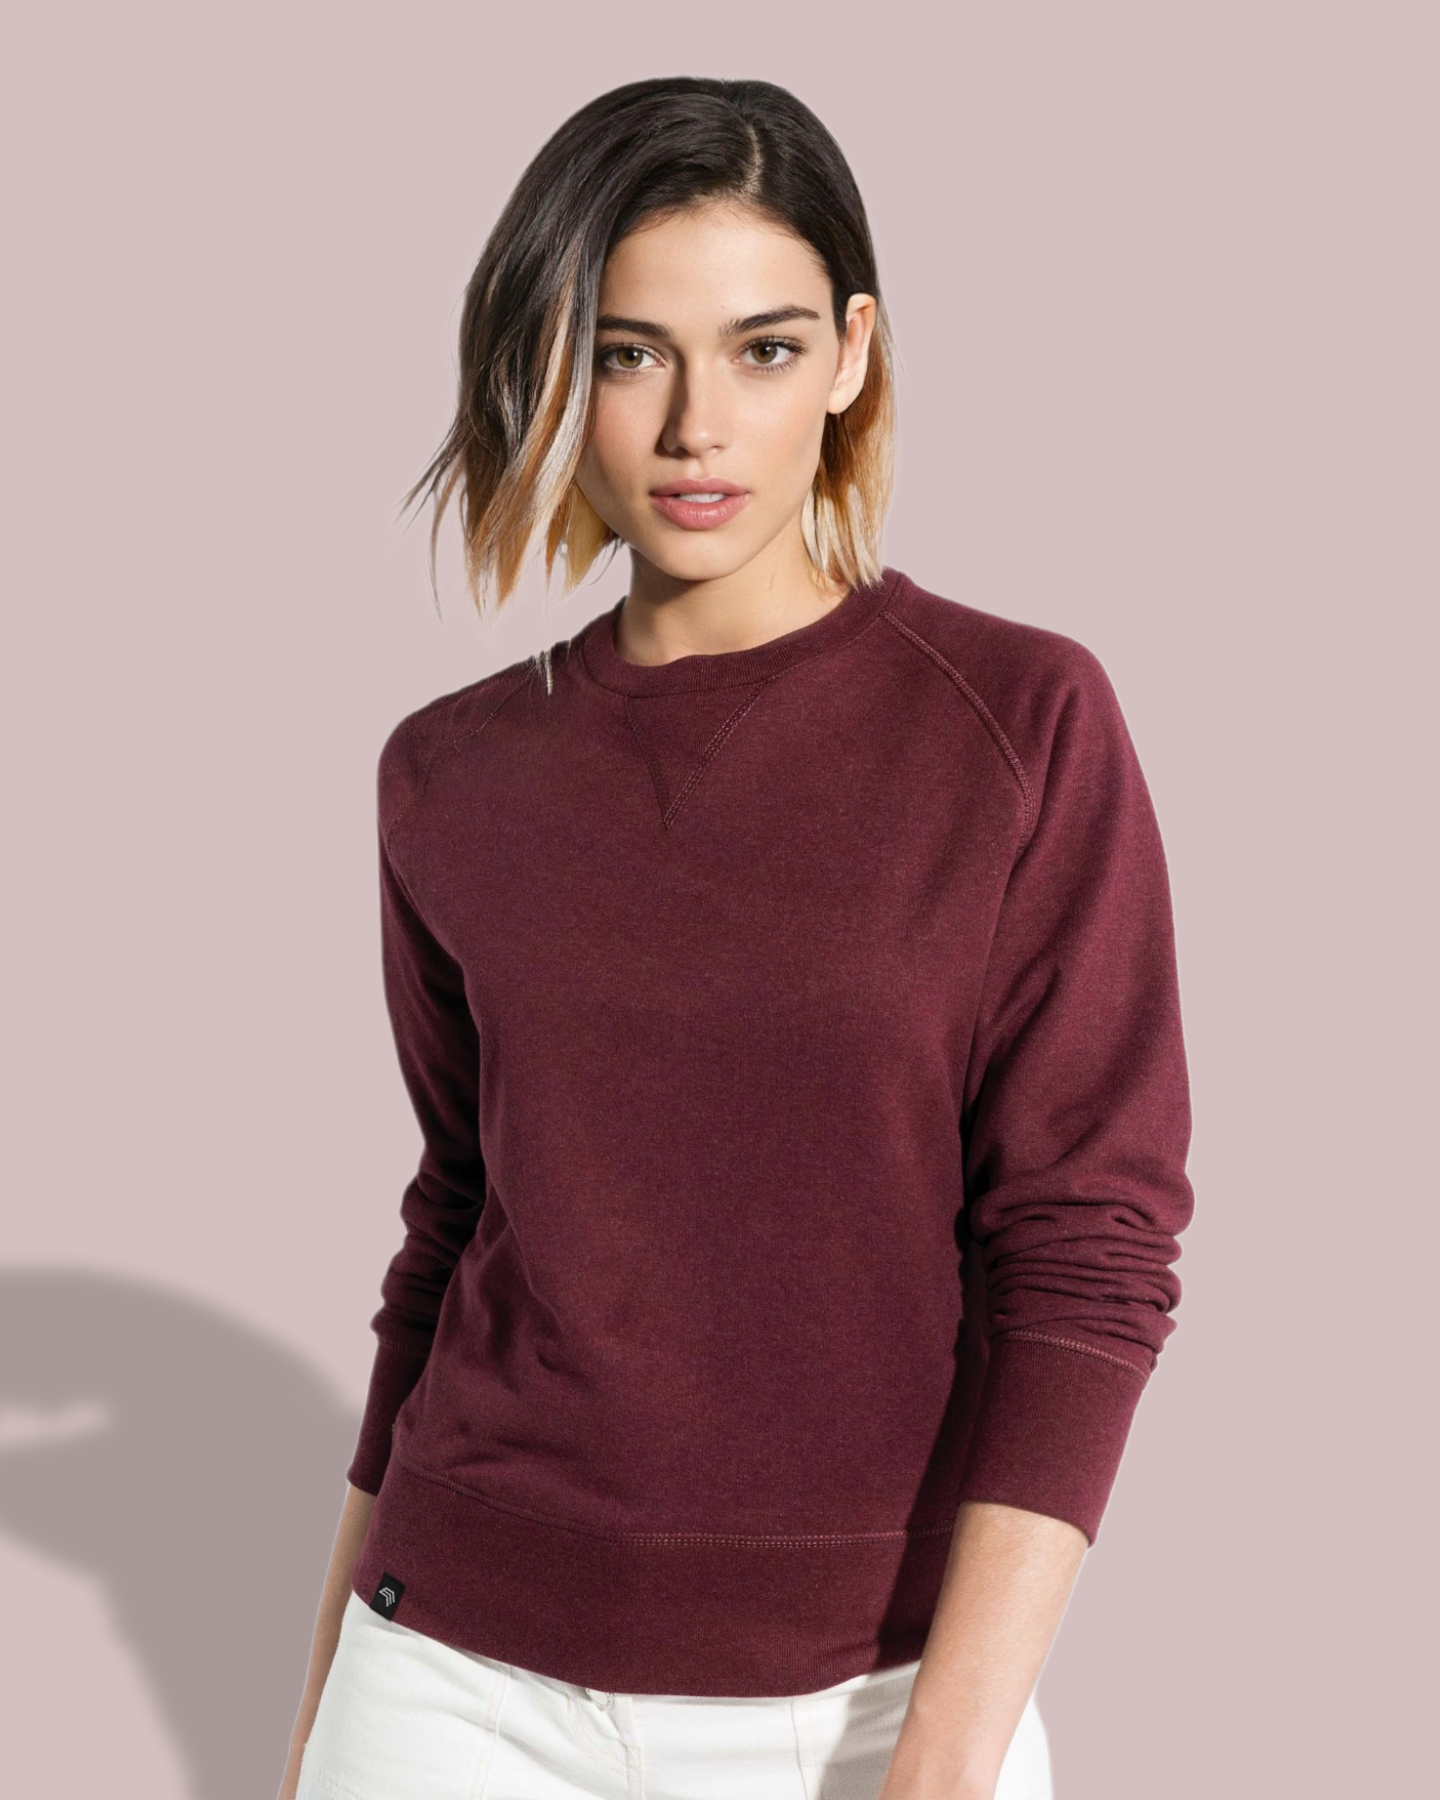 ― % ― KRB K481/ ― Women's Bio-Baumwolle Sweatshirt - Rot Burgund Melange [XL]